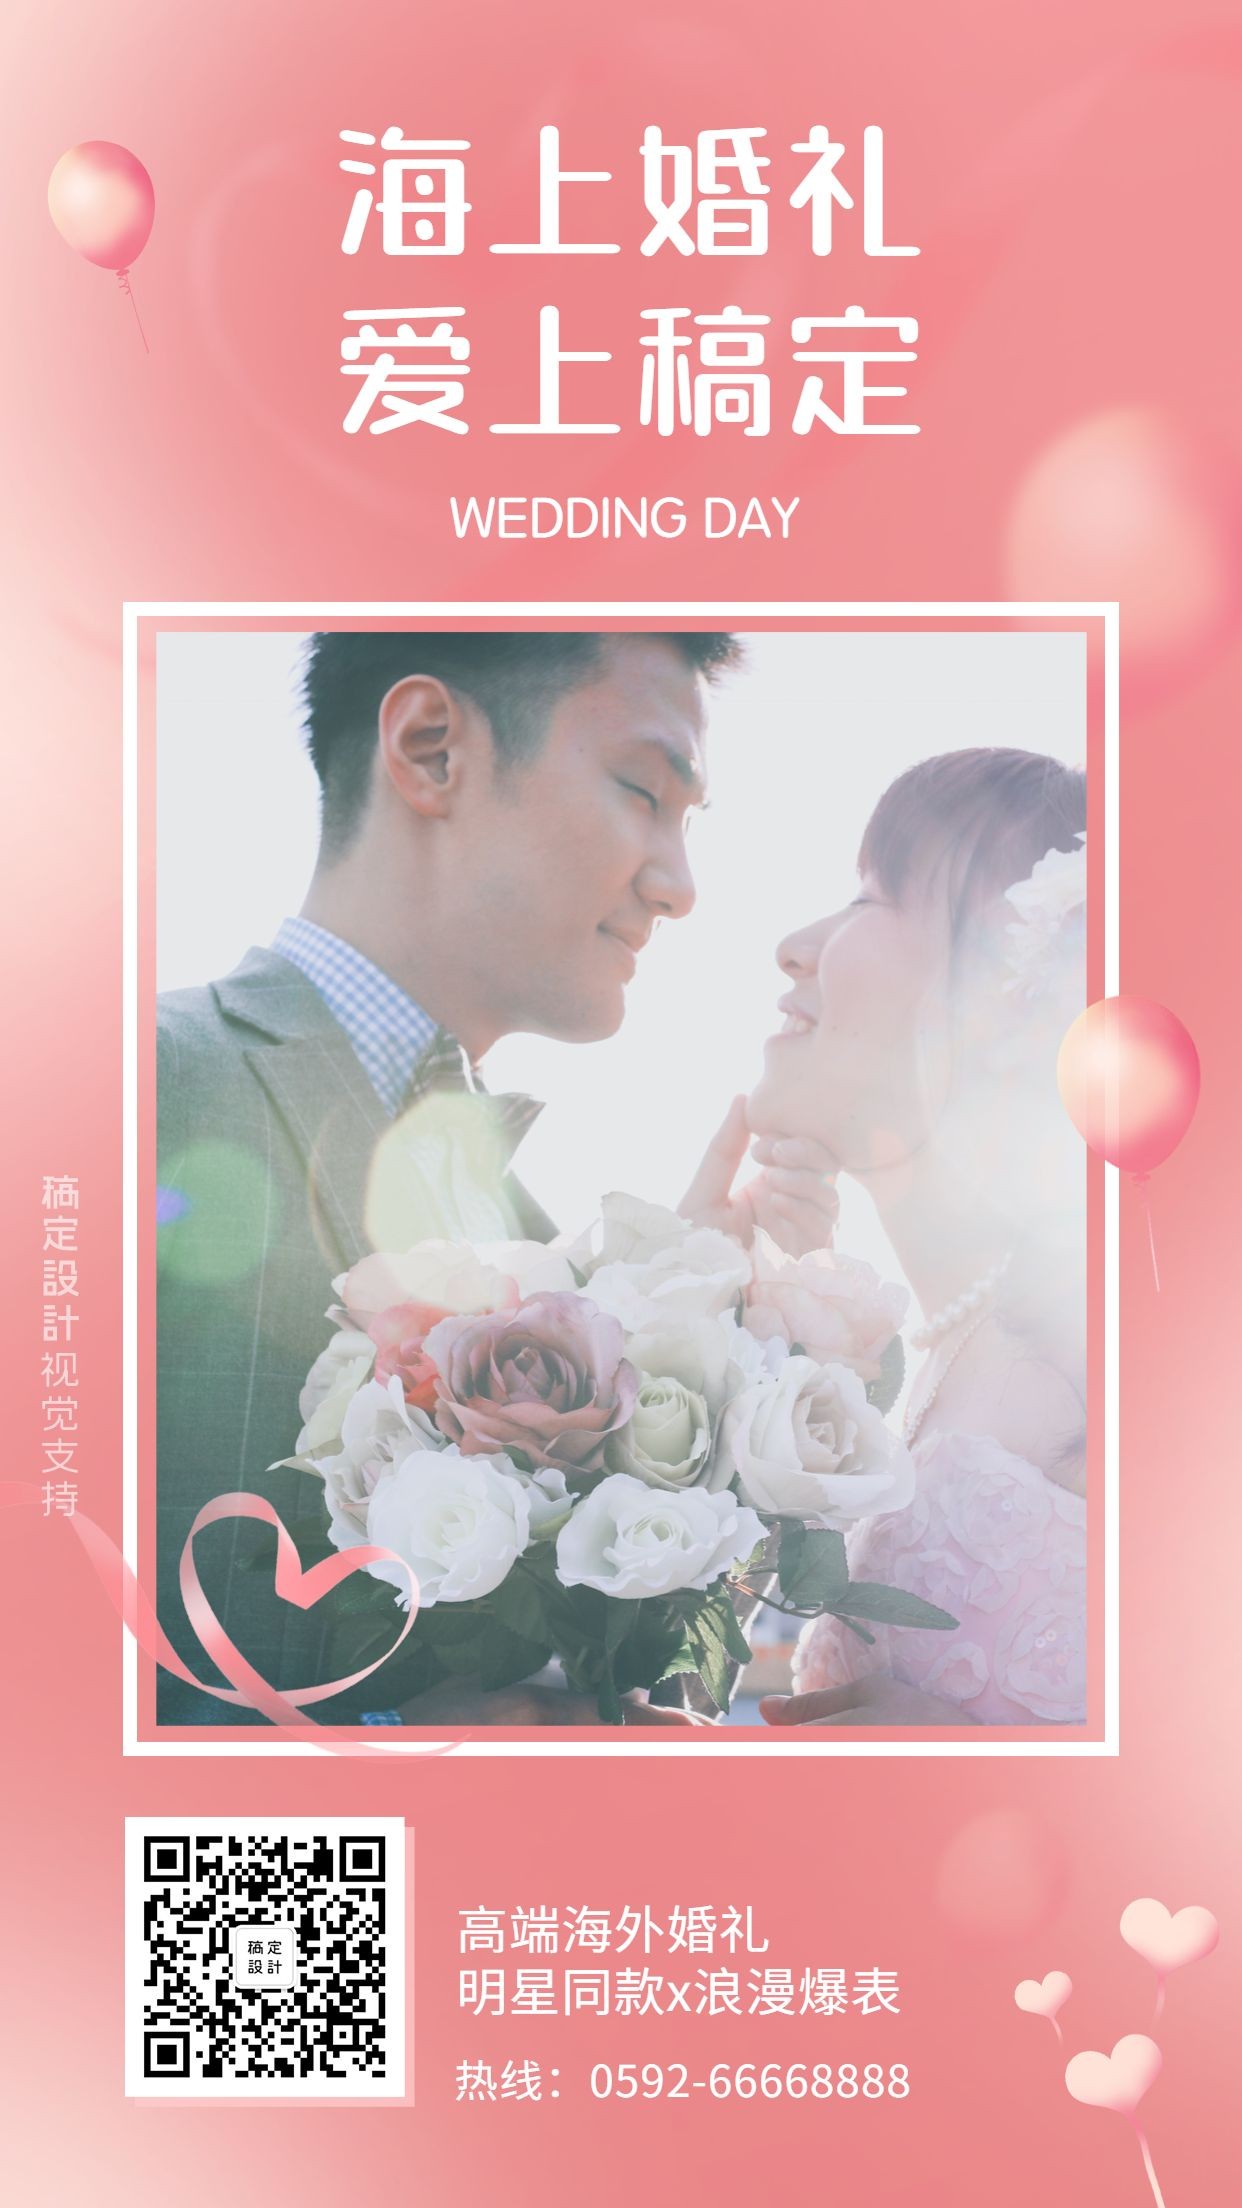 婚礼策划机构海外婚礼业务宣传引流海报预览效果